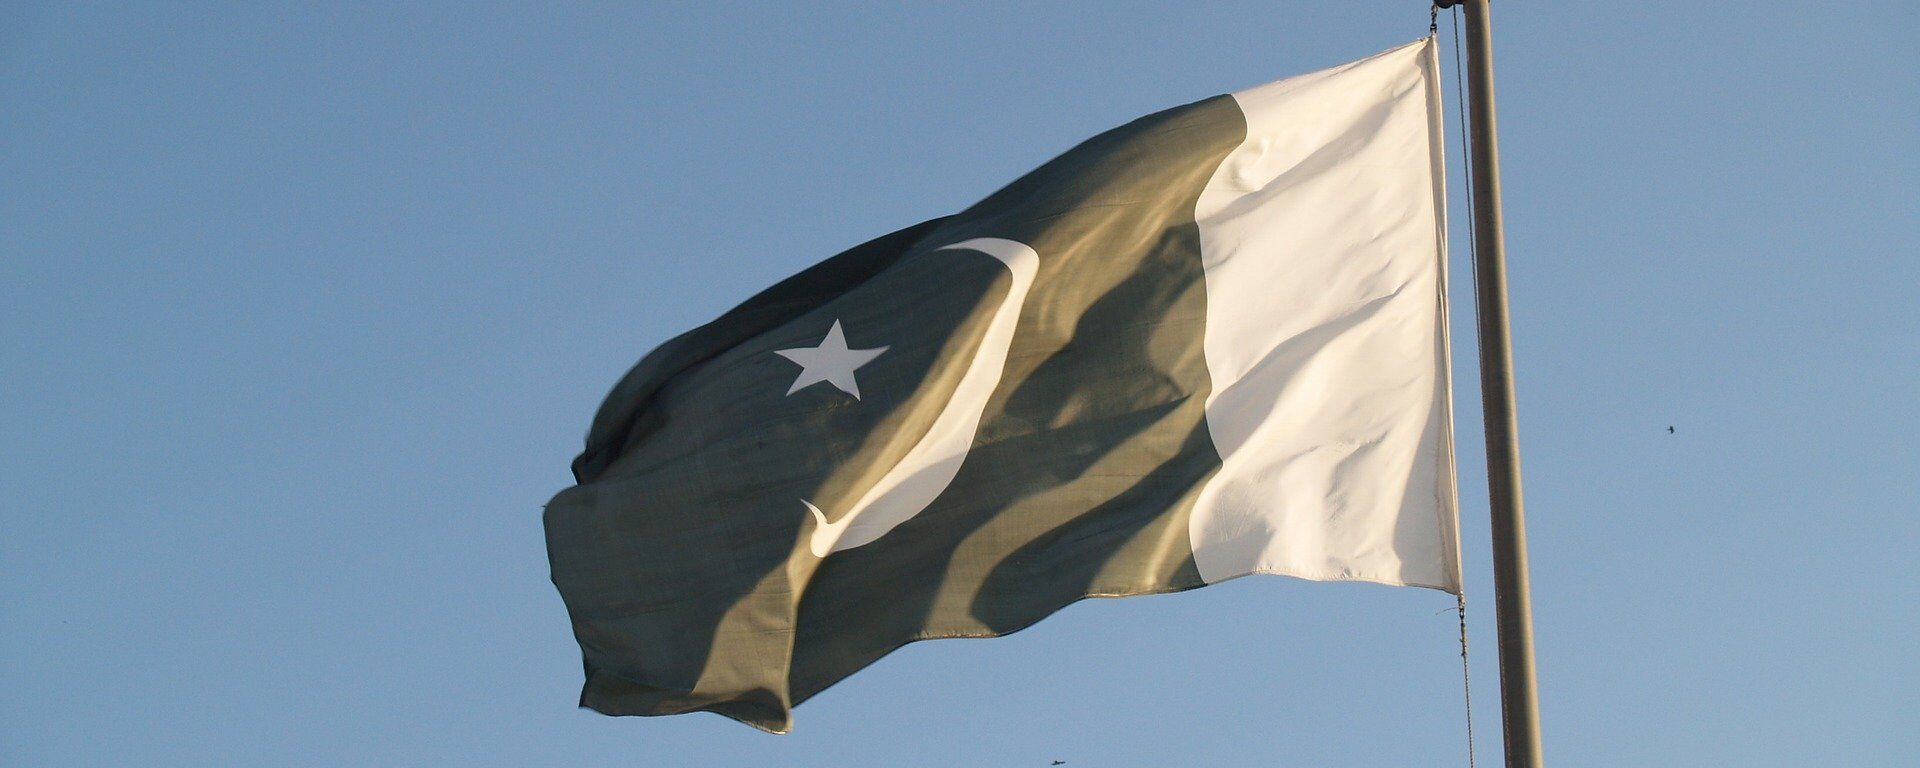 La bandera de Pakistán - Sputnik Mundo, 1920, 20.10.2021